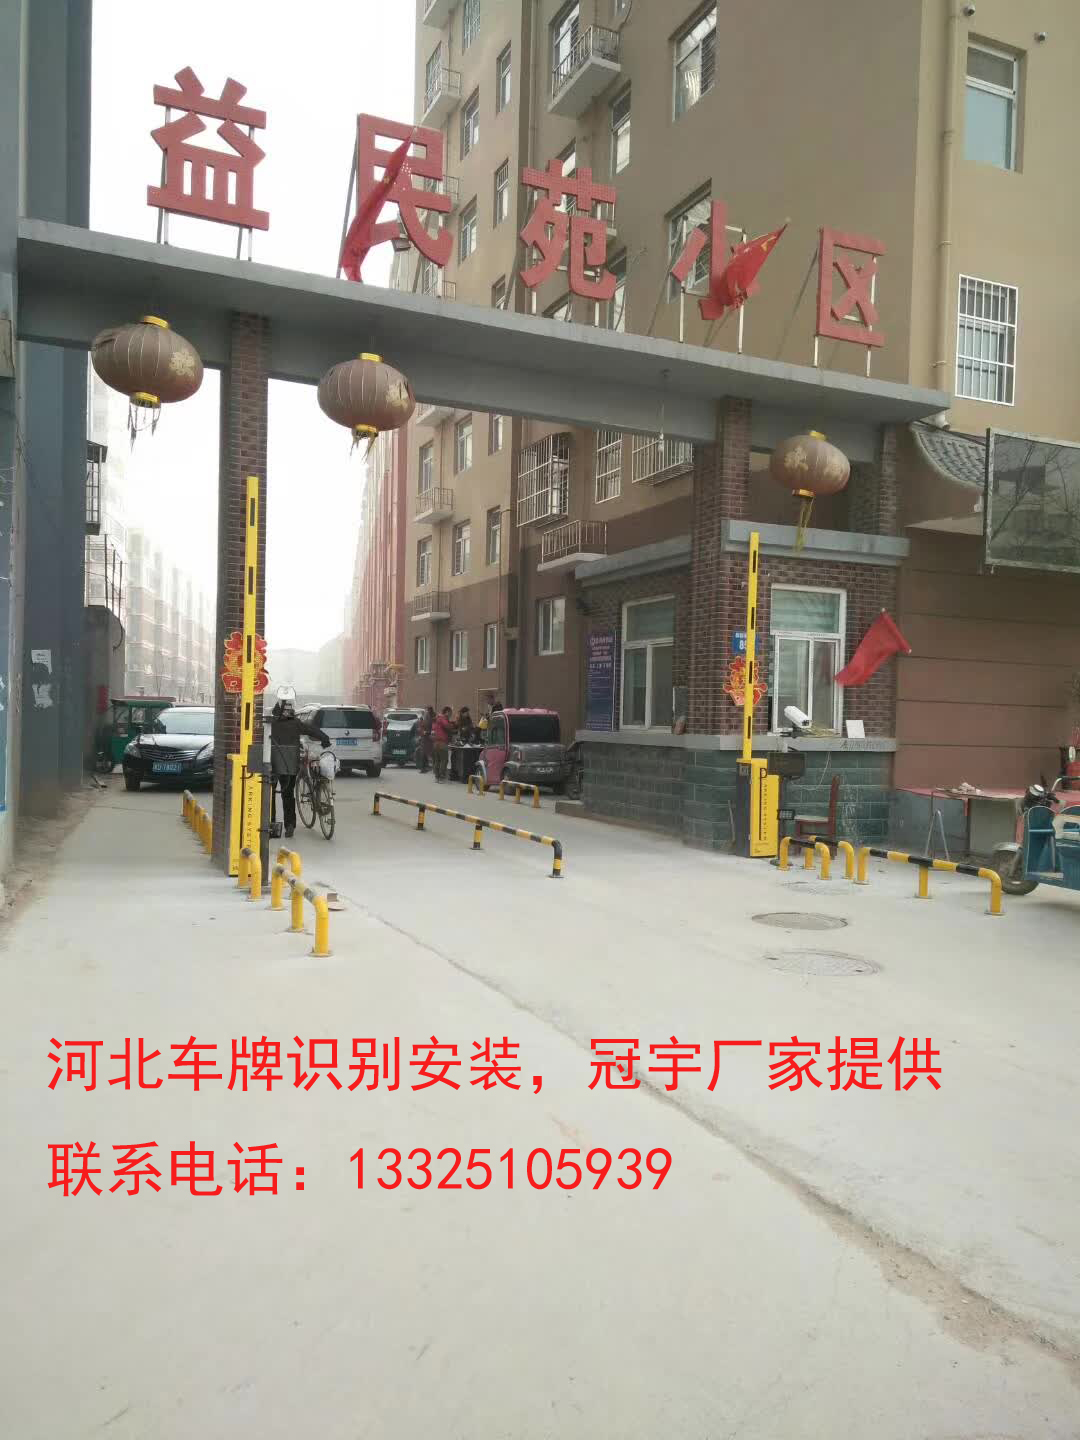 五莲邯郸哪有卖道闸车牌识别？